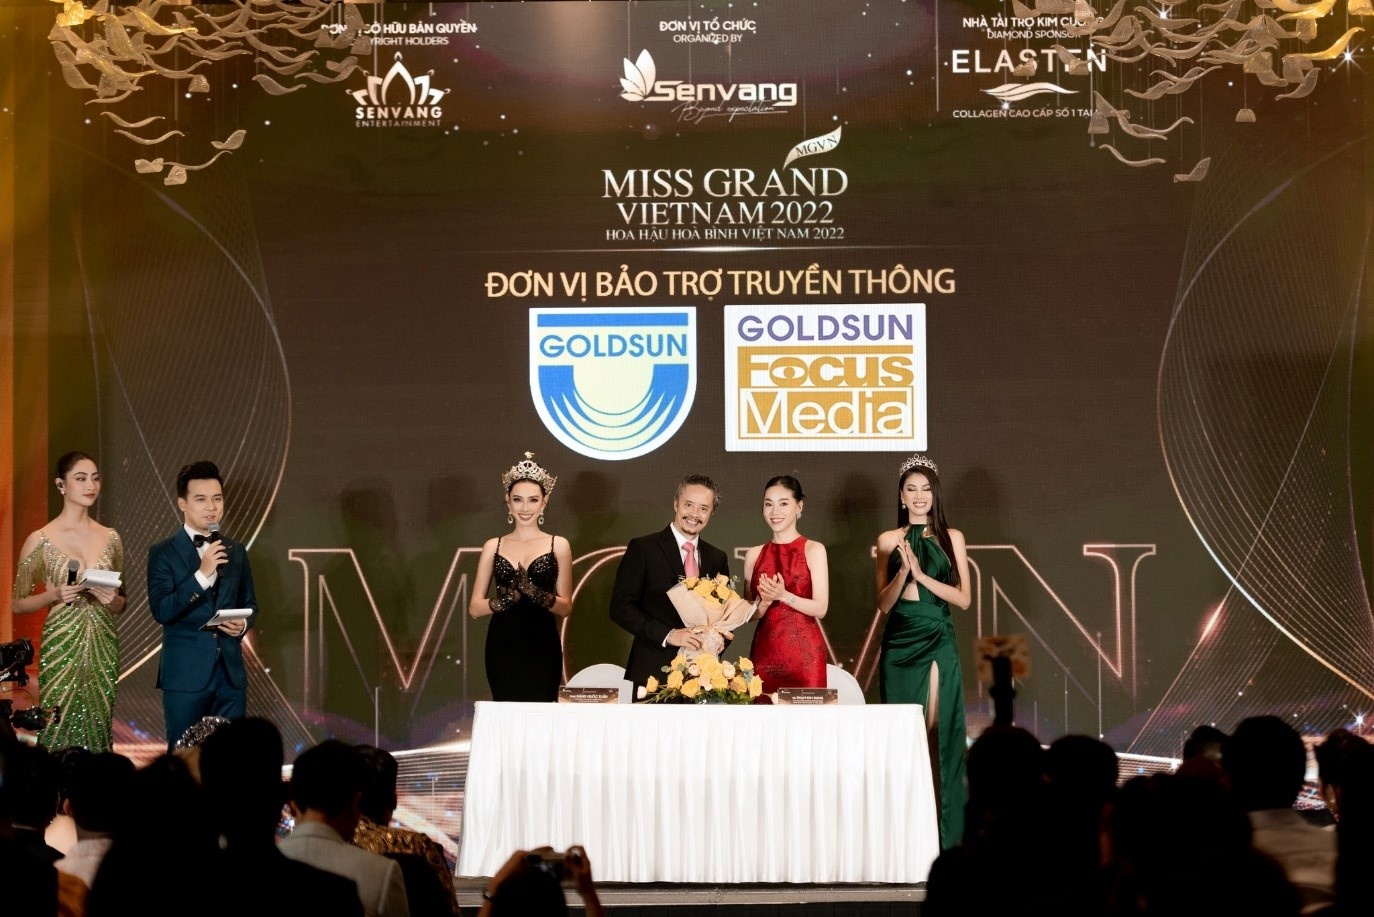 Goldsun Media Group bảo trợ truyền thông cho Miss Grand Vietnam 2022 - ảnh 1